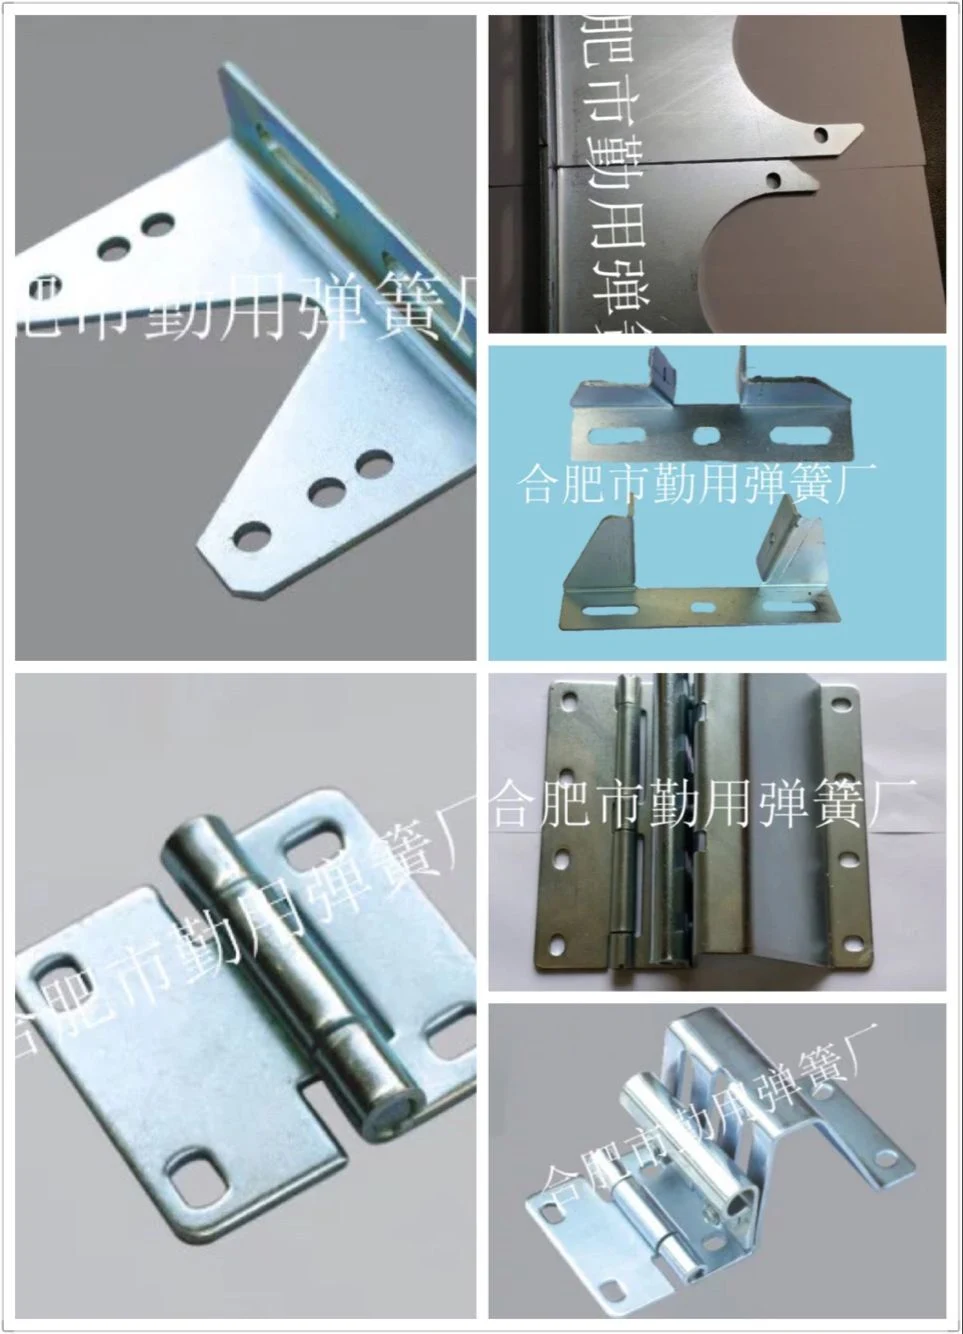 Factory Spring Anchor Brackets for Industrial Door Hardware Door Accessories